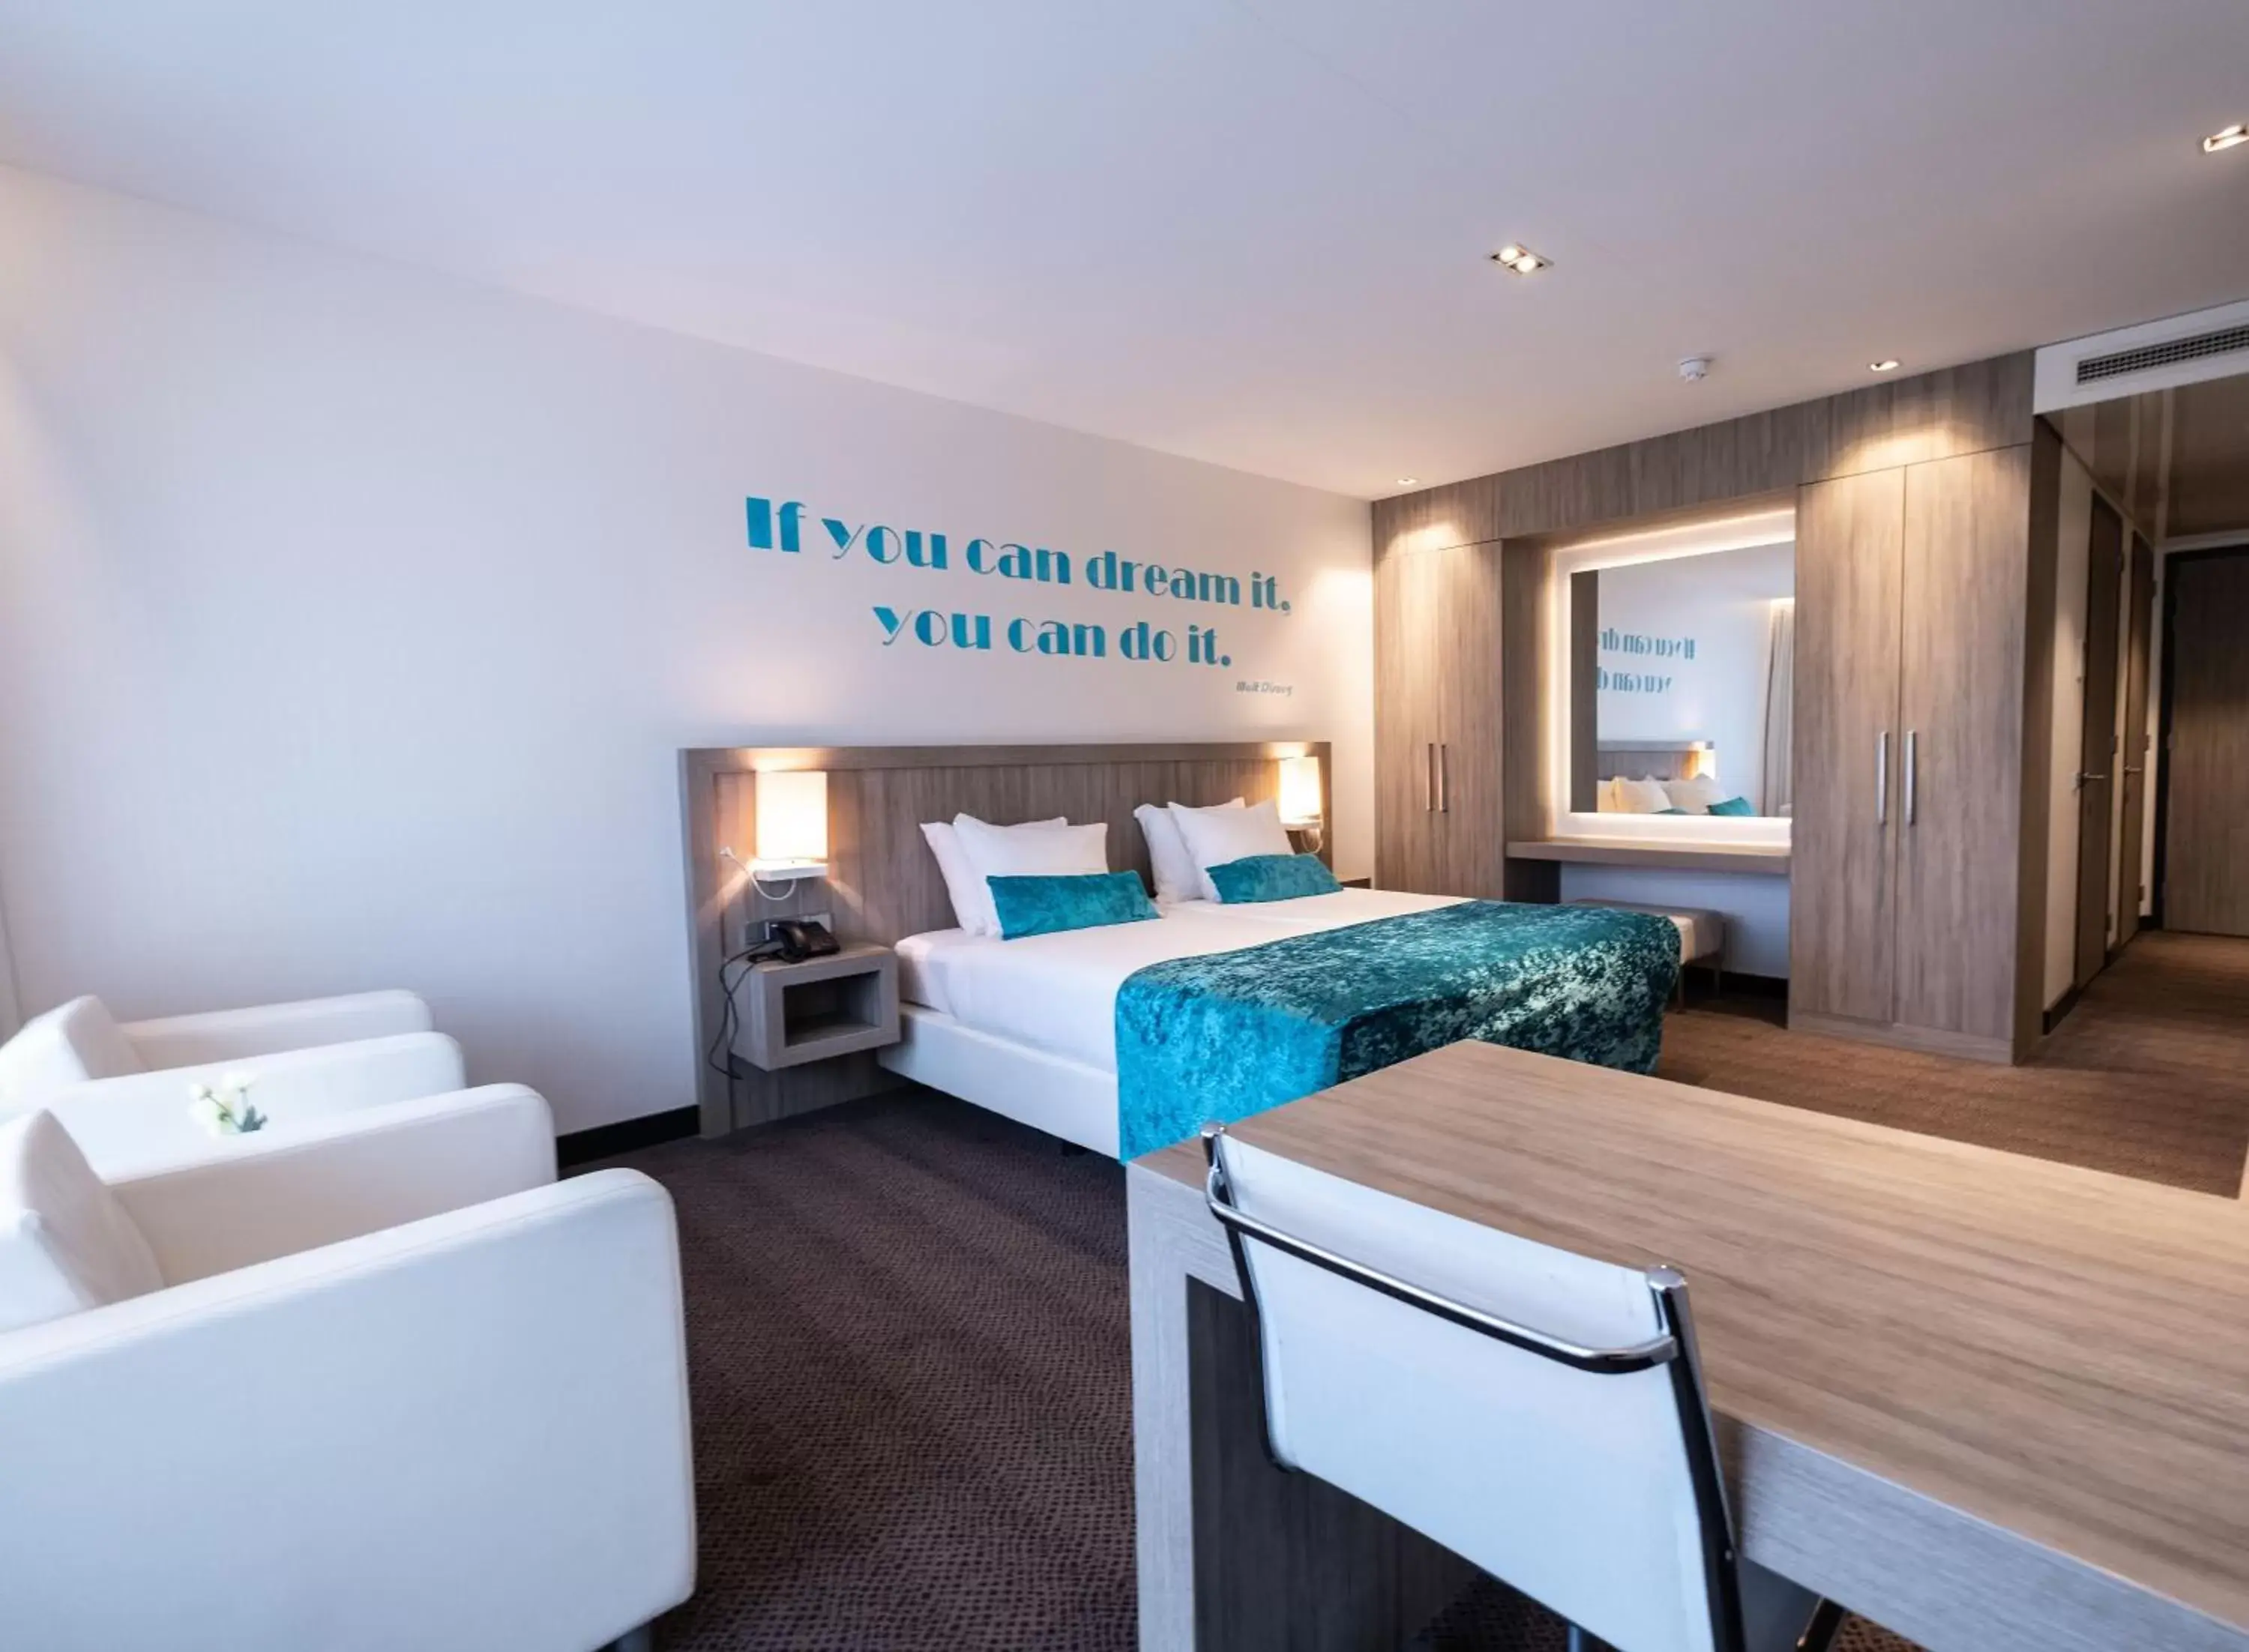 Deluxe Double Room with Balcony in Van der Valk Hotel Vianen - Utrecht